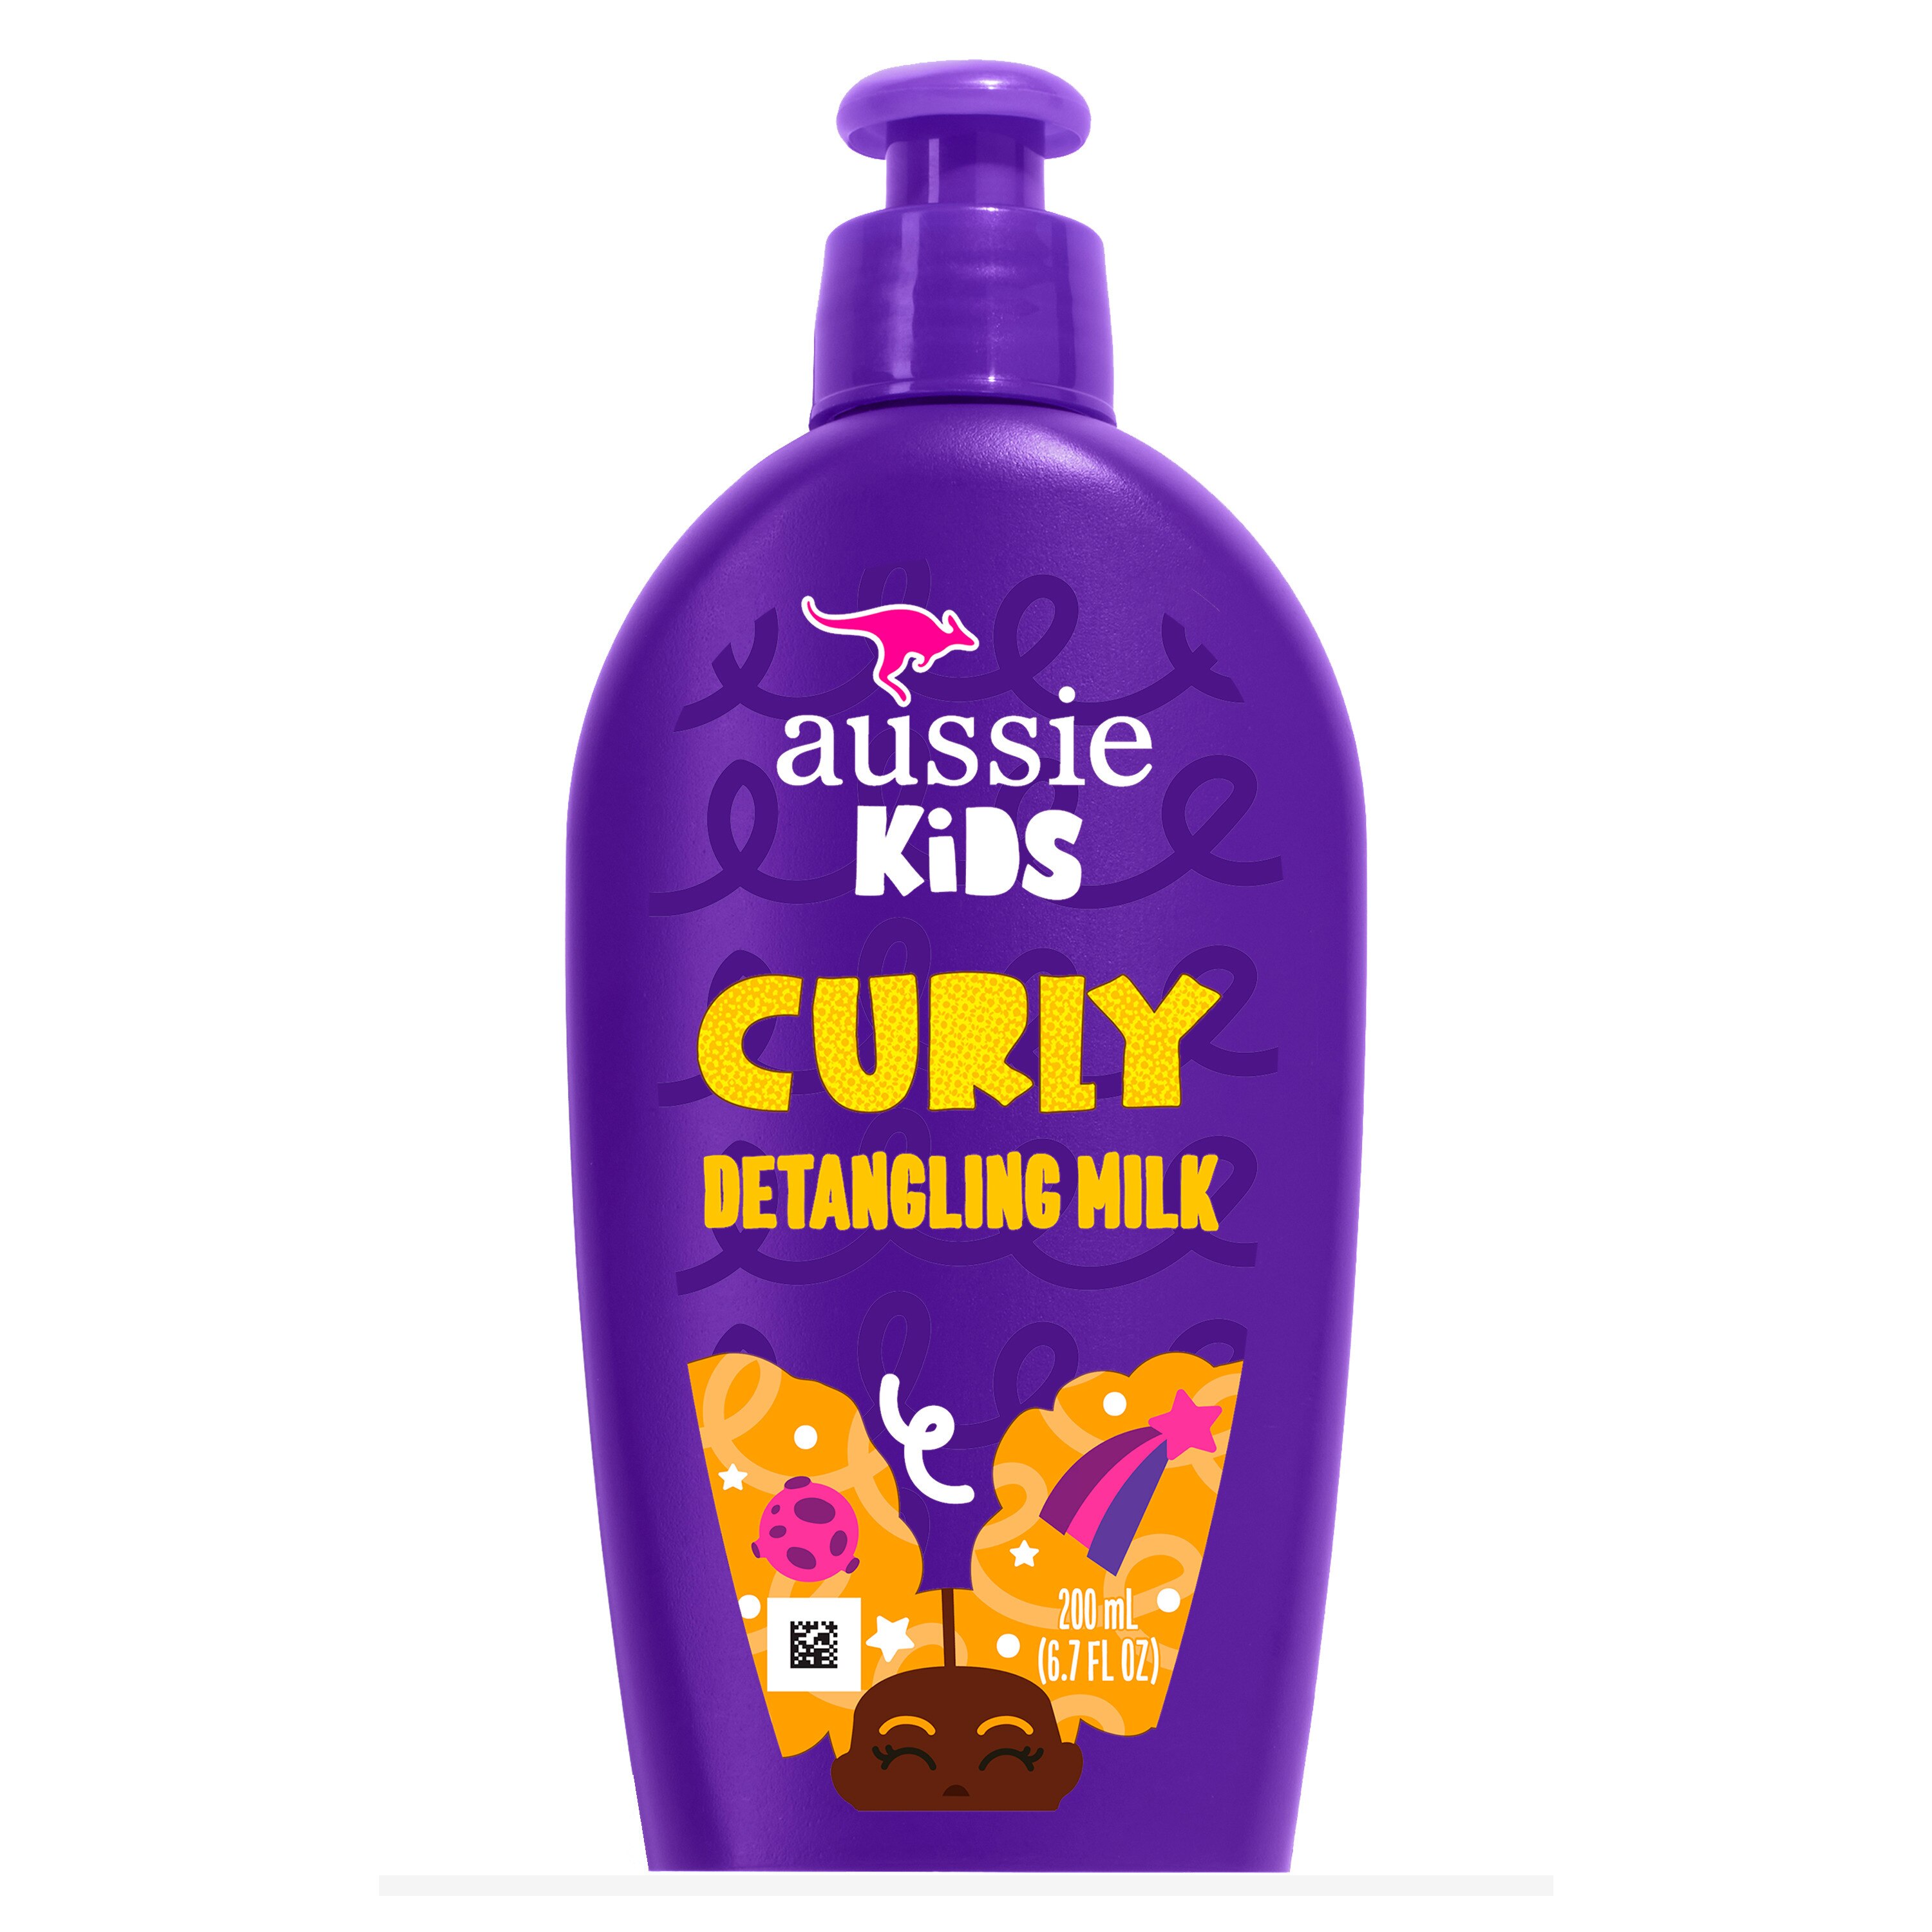 Aussie Kids Curly Detangling Milk, 12 OZ